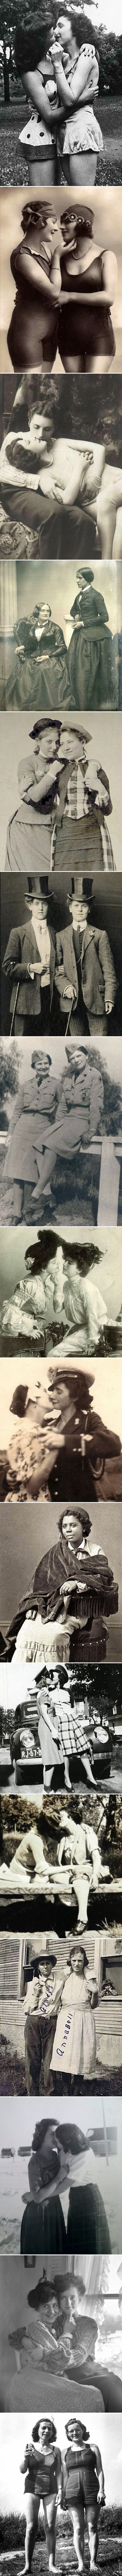 Serija starih fotografija otkriva kako su lezbijke izgledale u 19. i 20. stoljeću